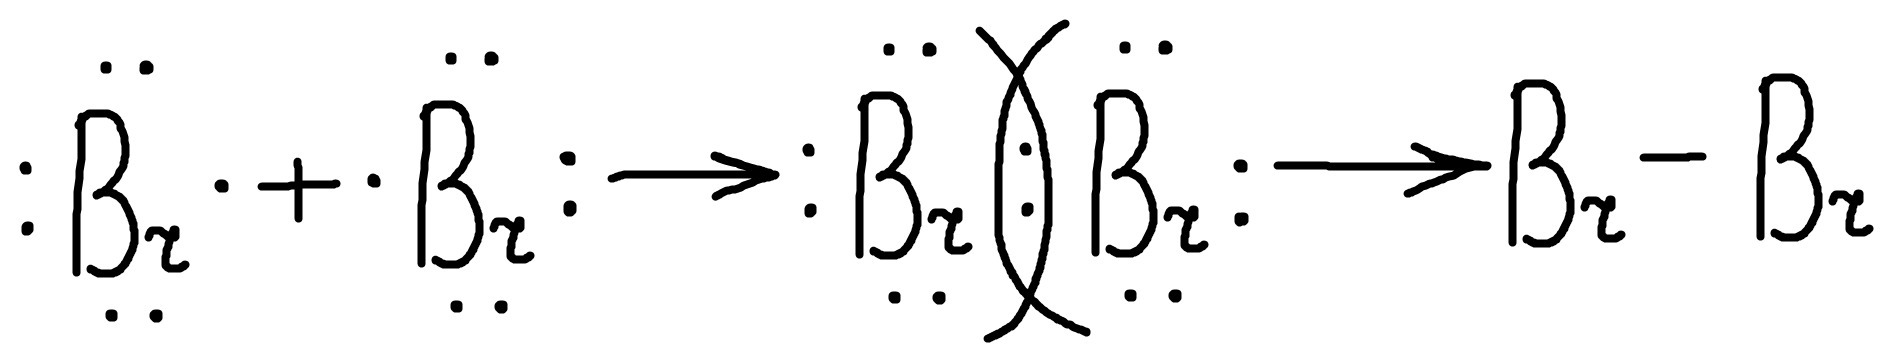 Ионная связь br2 схема - 81 фото